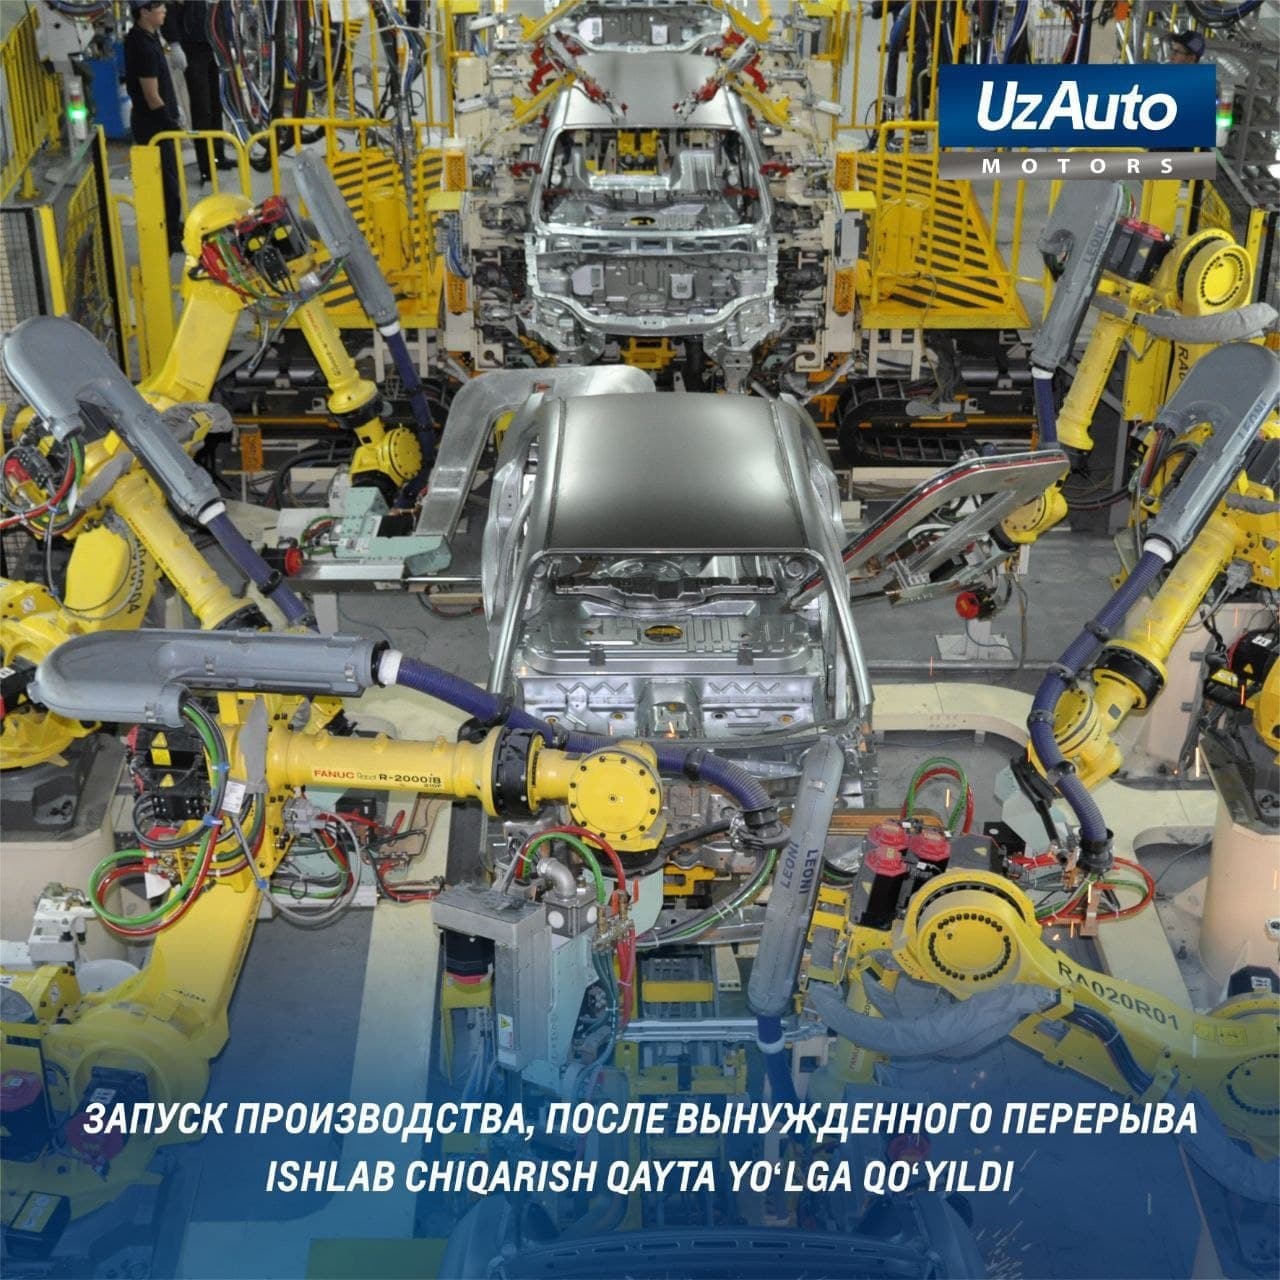 Компания «UzAuto Motors» после масштабных работ по модернизации расширяет объемы производства.